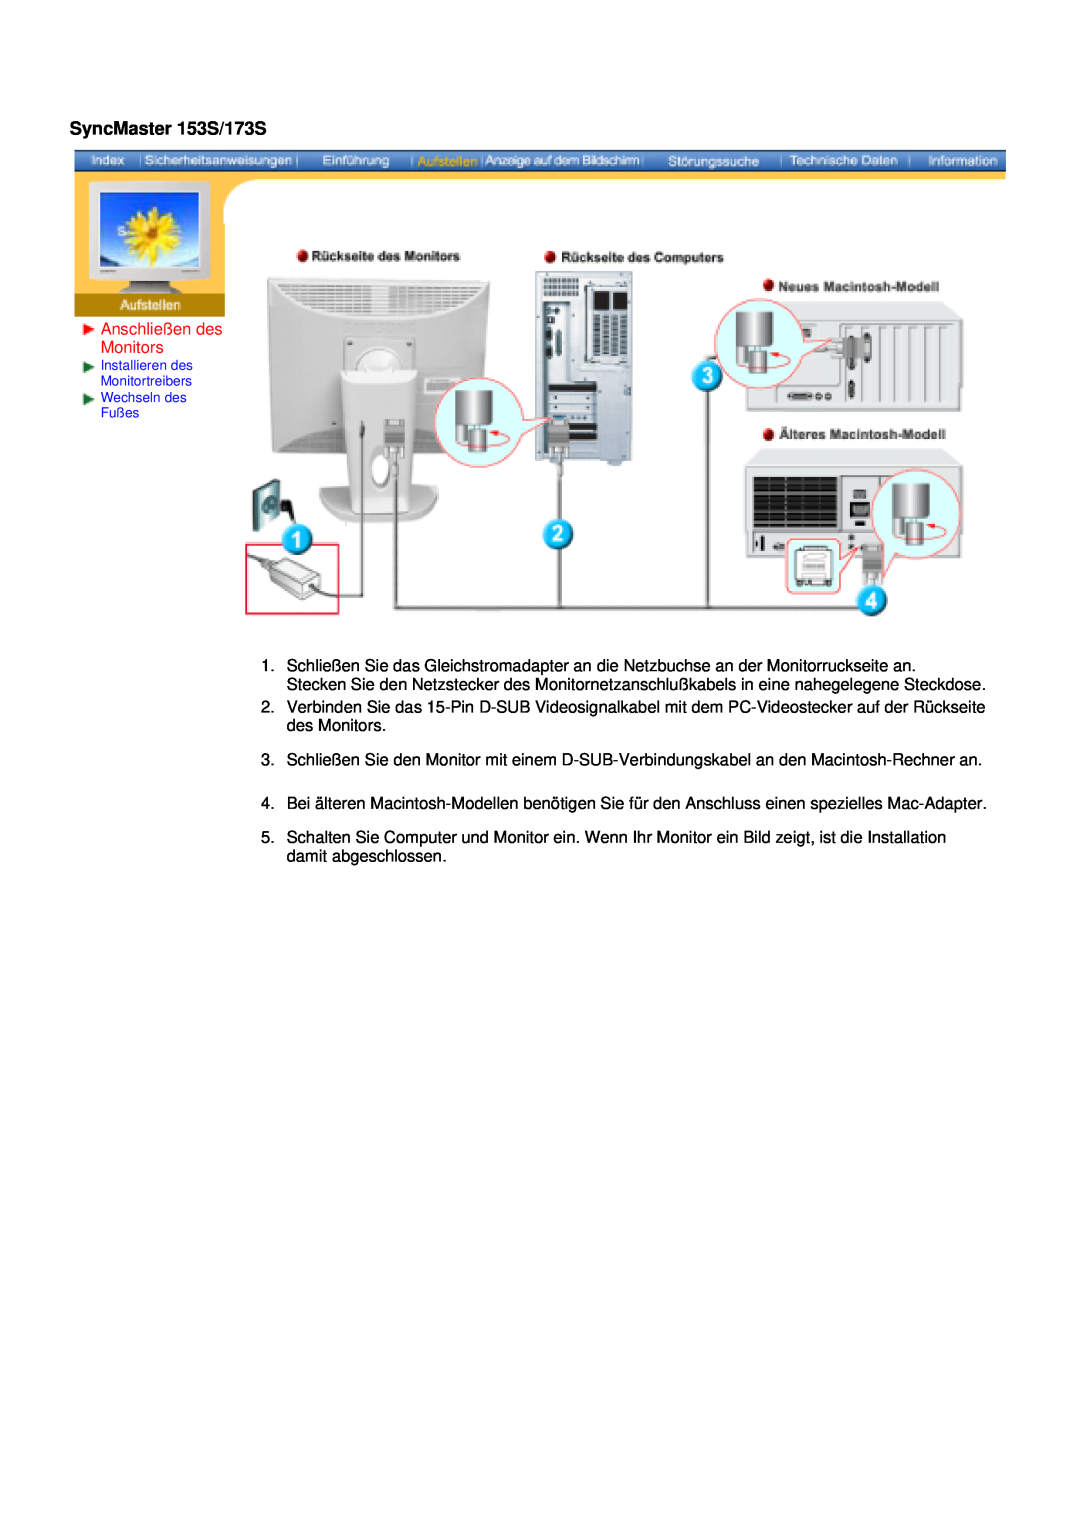 Samsung V manual SyncMaster 153S/173S, Anschließen des Monitors 